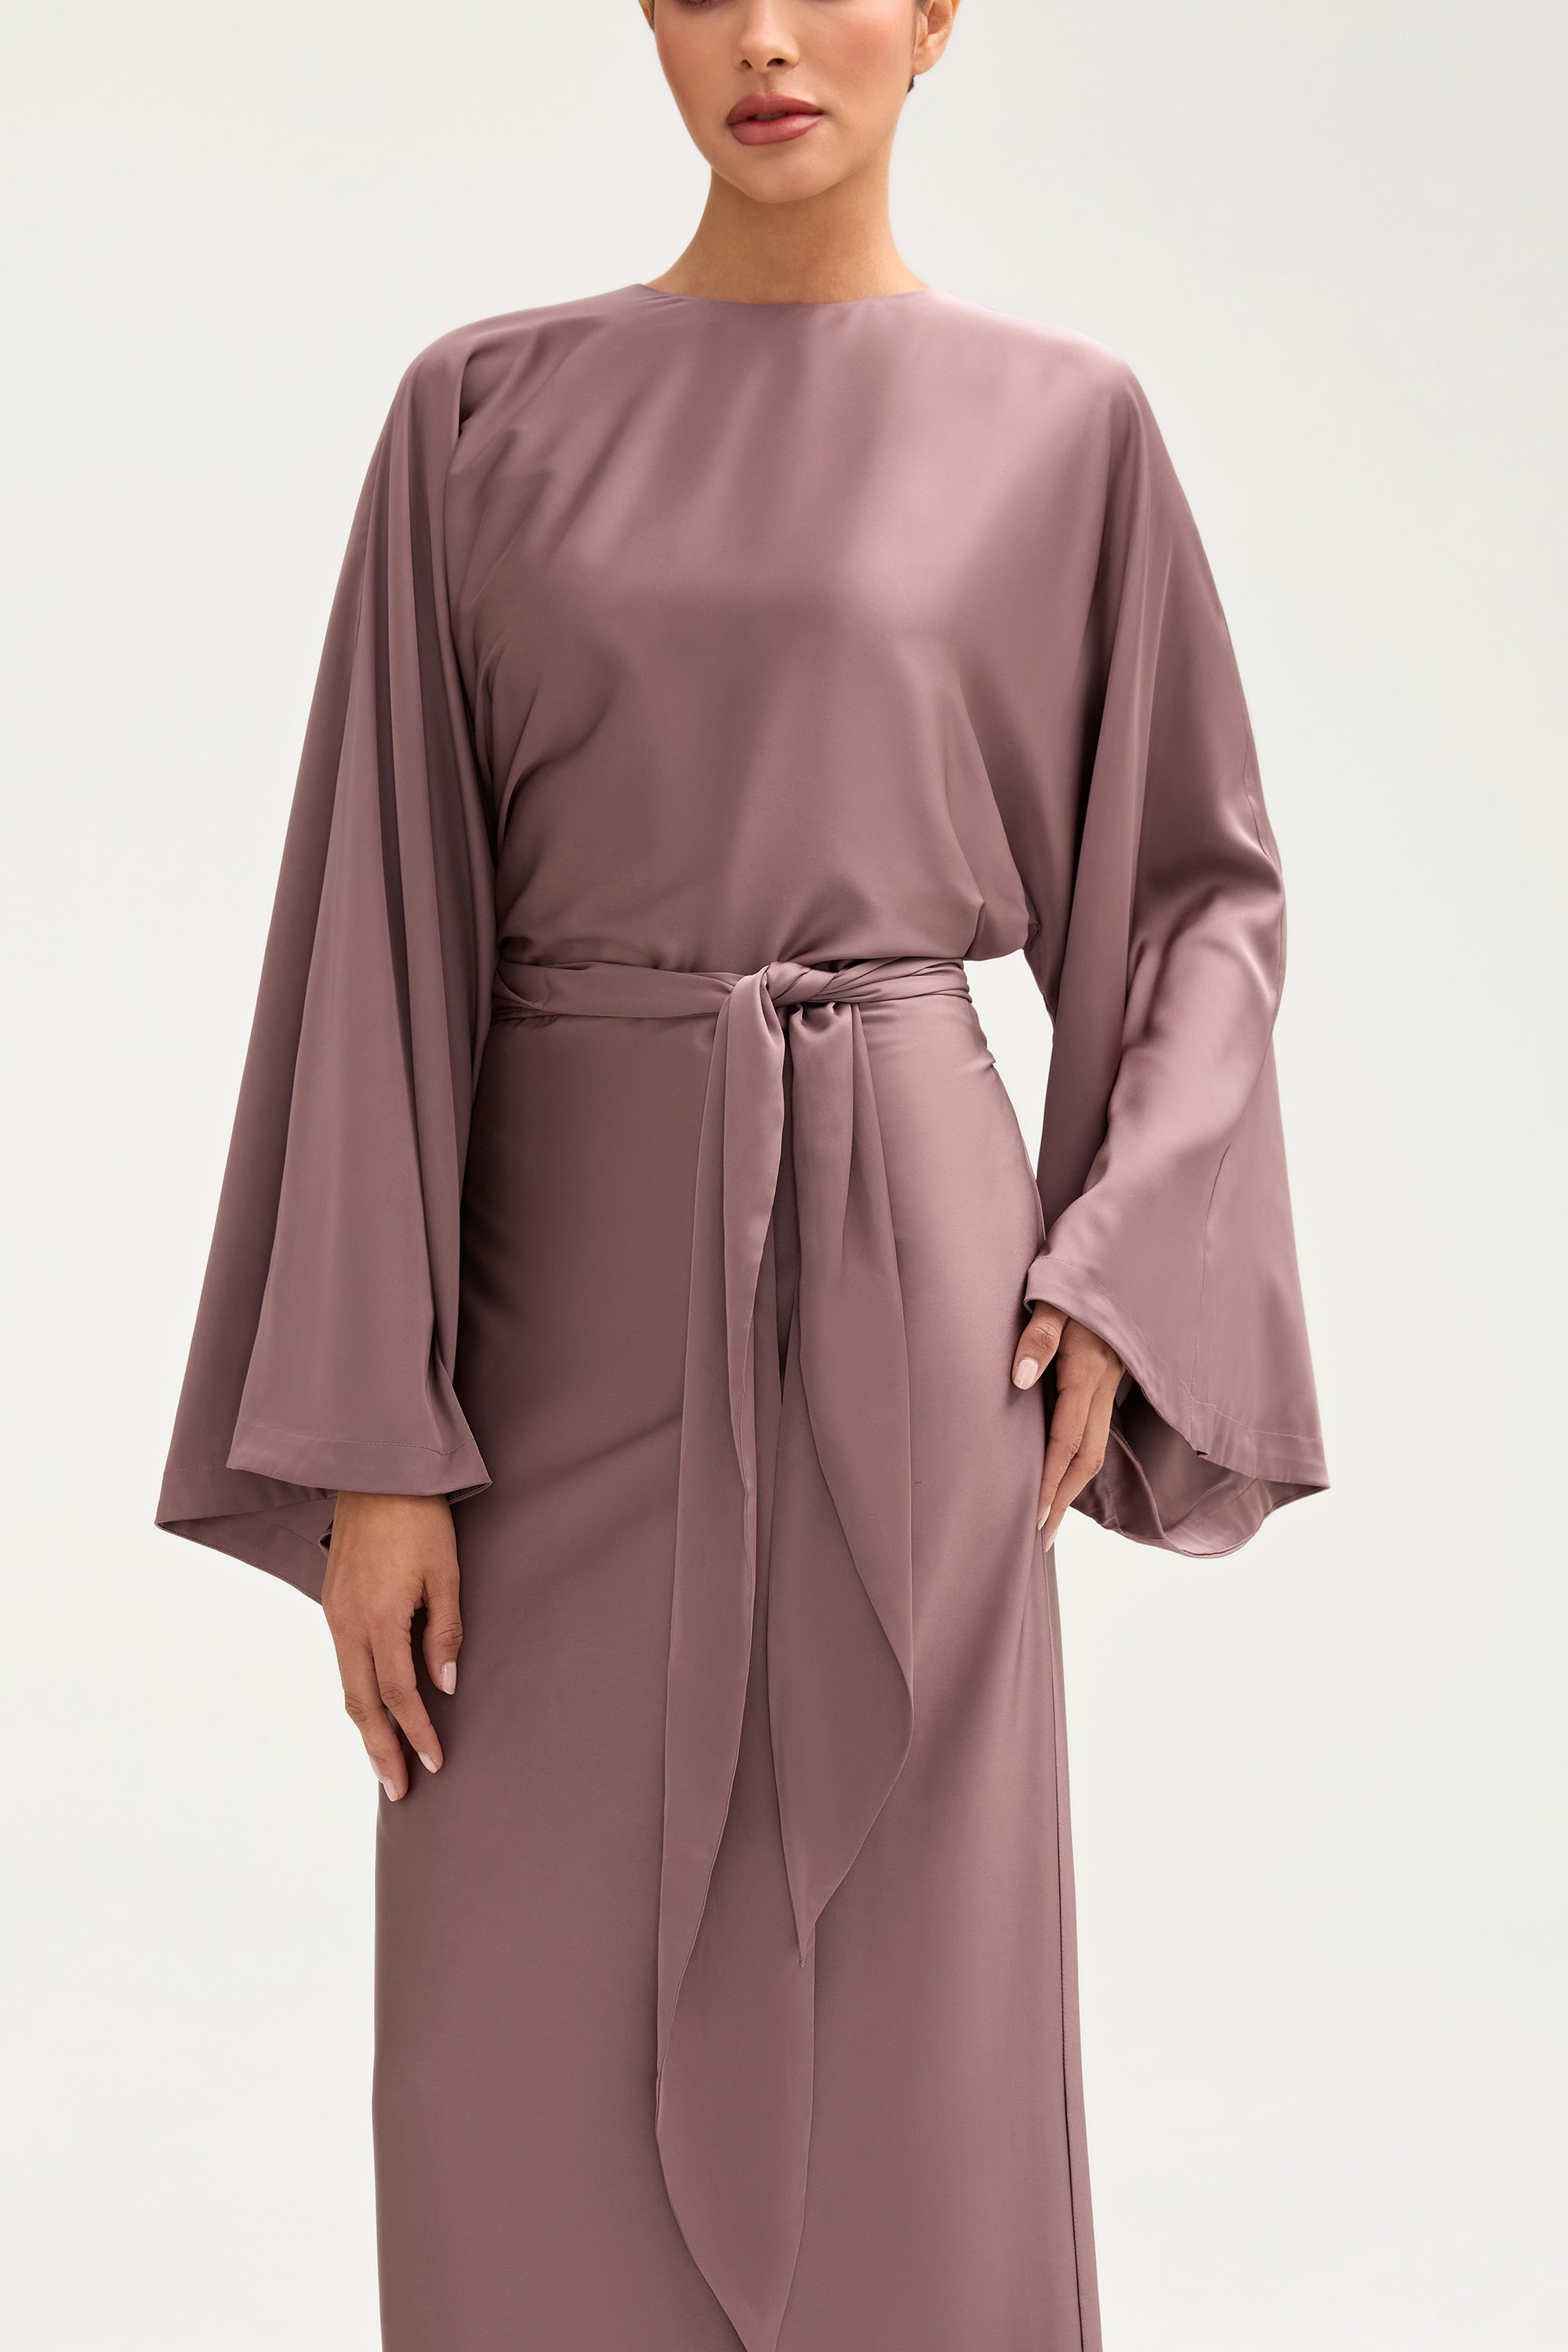 Batool Satin Maxi Dress - Deep Taupe Clothing Veiled 